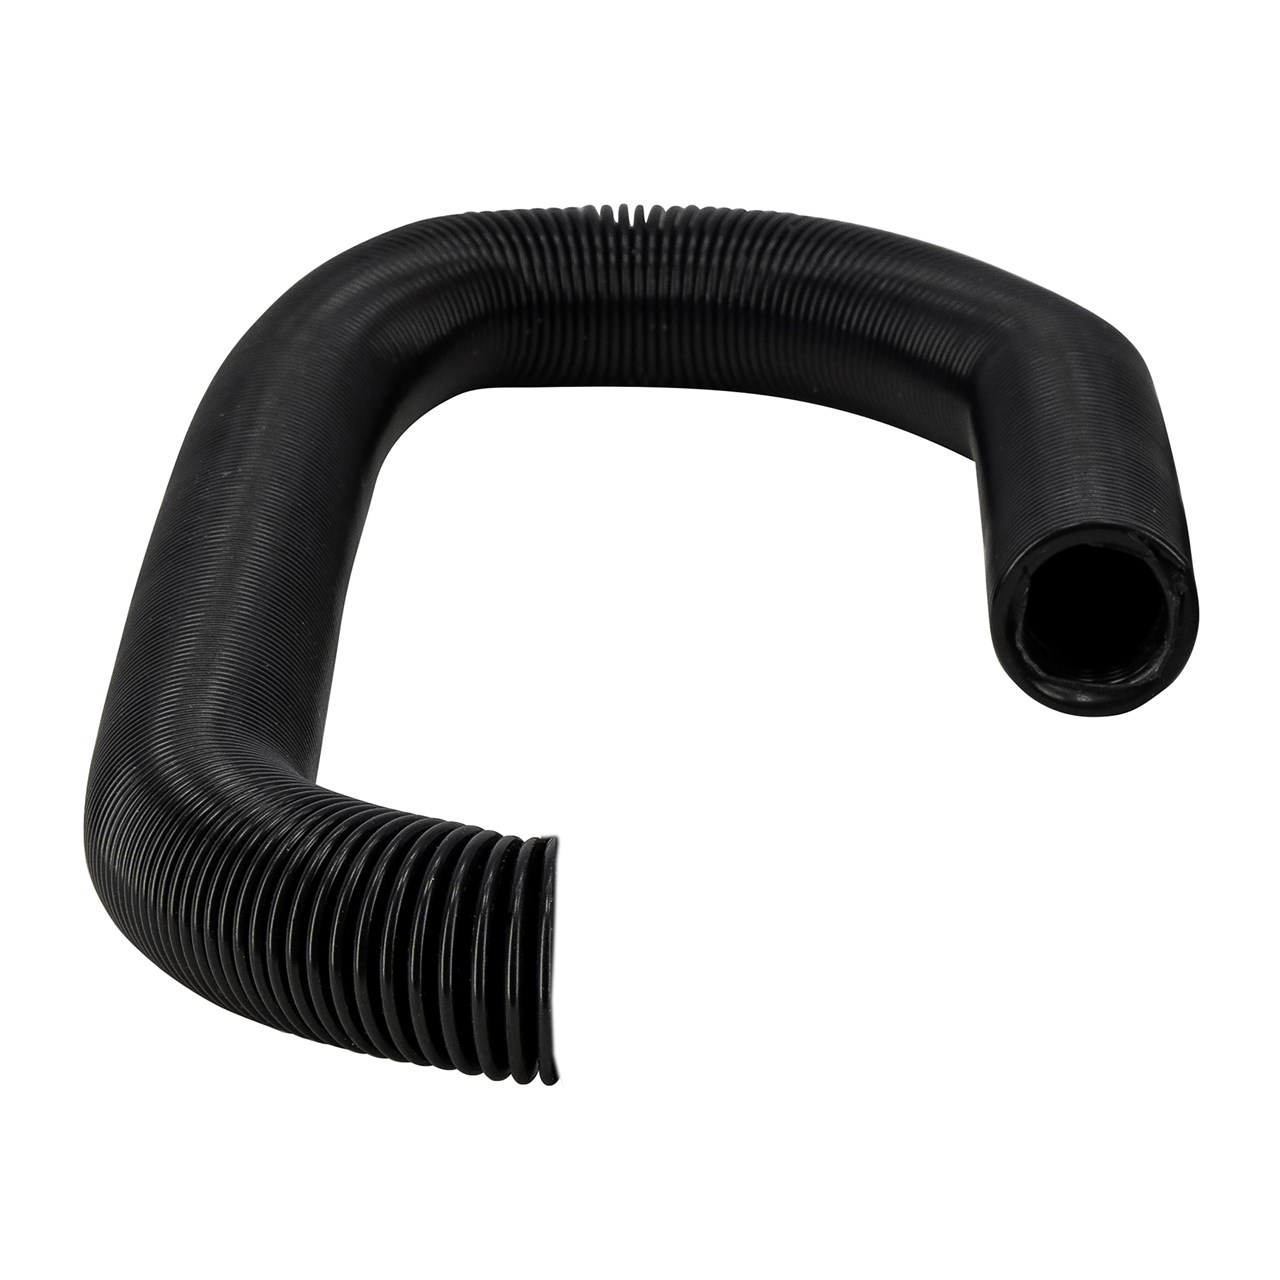 SWIX Flexi hose for suction system